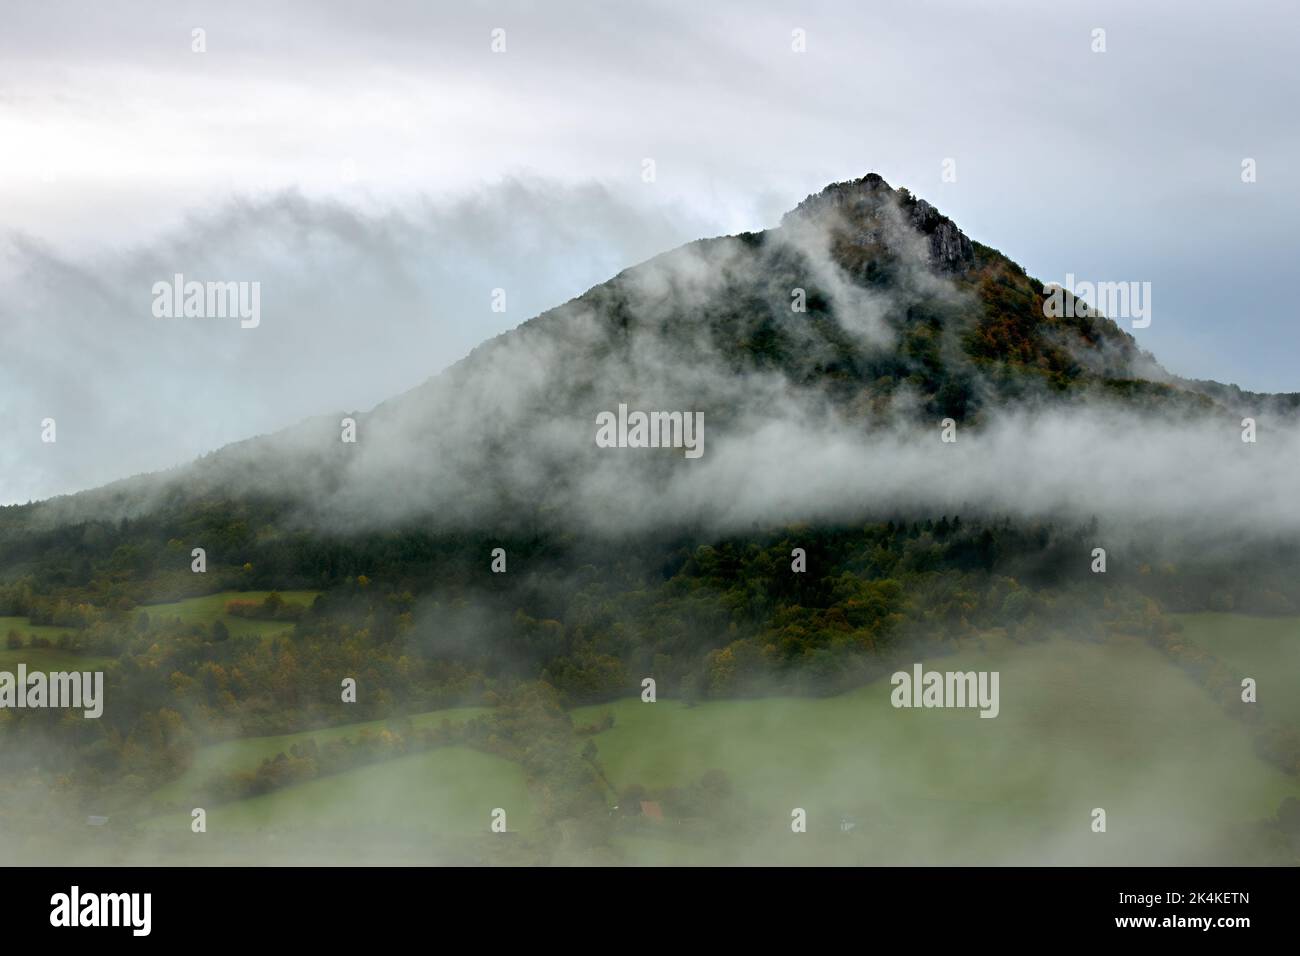 Herbstmorgen neblige Landschaft mit rollendem Nebel ins Tal. Hill Vapec im Hintergrund. Natur Europas. Slowakei. Stockfoto